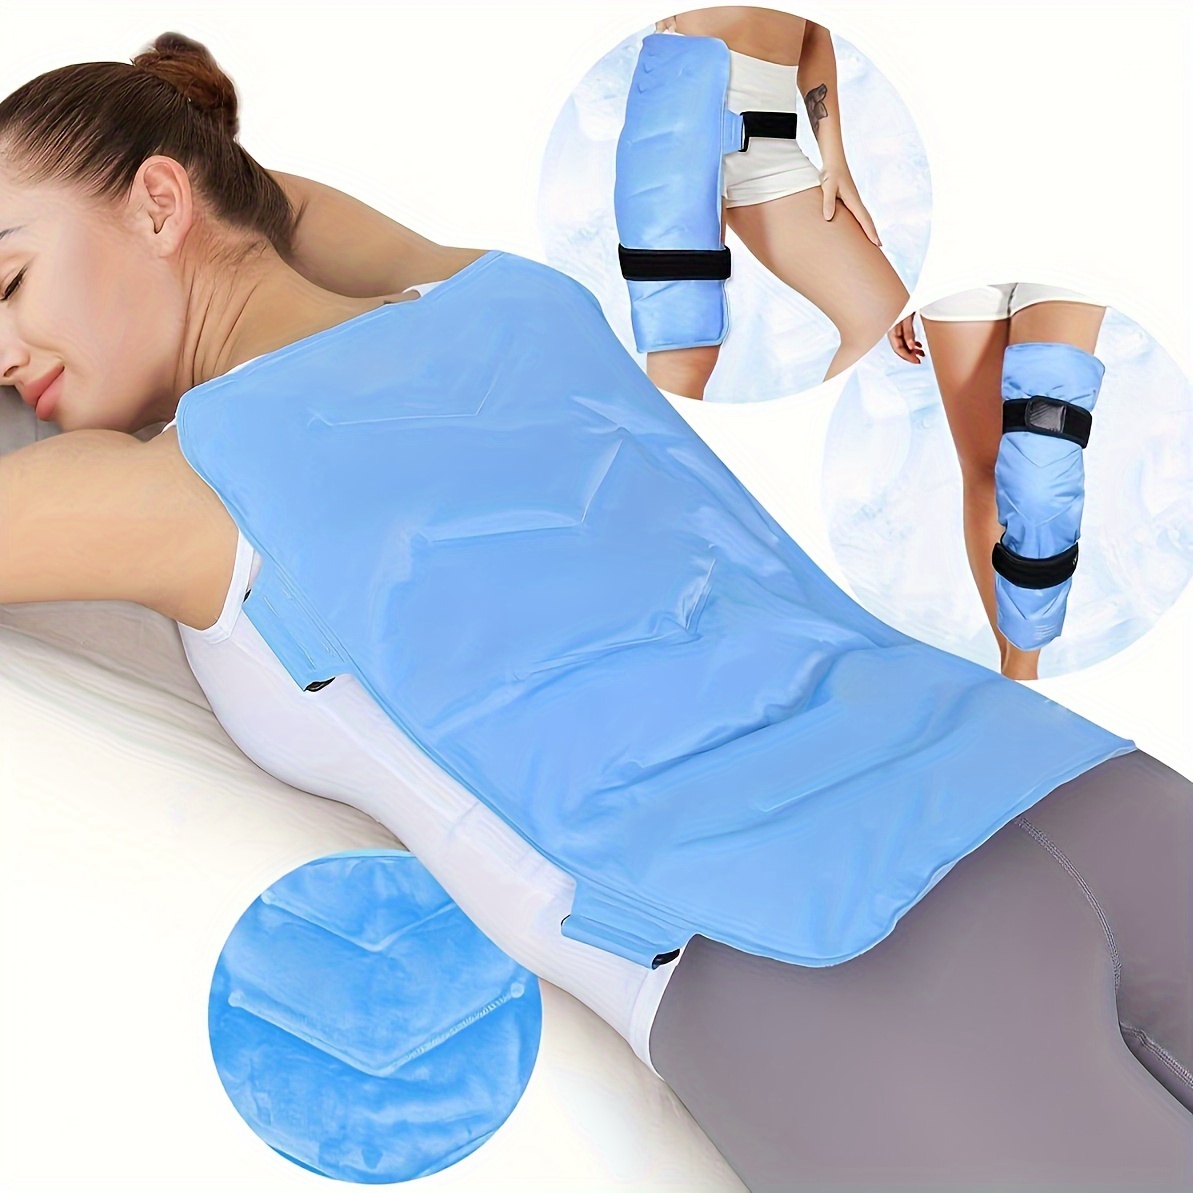 Bolsa de hielo para aliviar el dolor con correa de compresión para terapia  de calor y frío, paquete de gel reutilizable de larga duración para